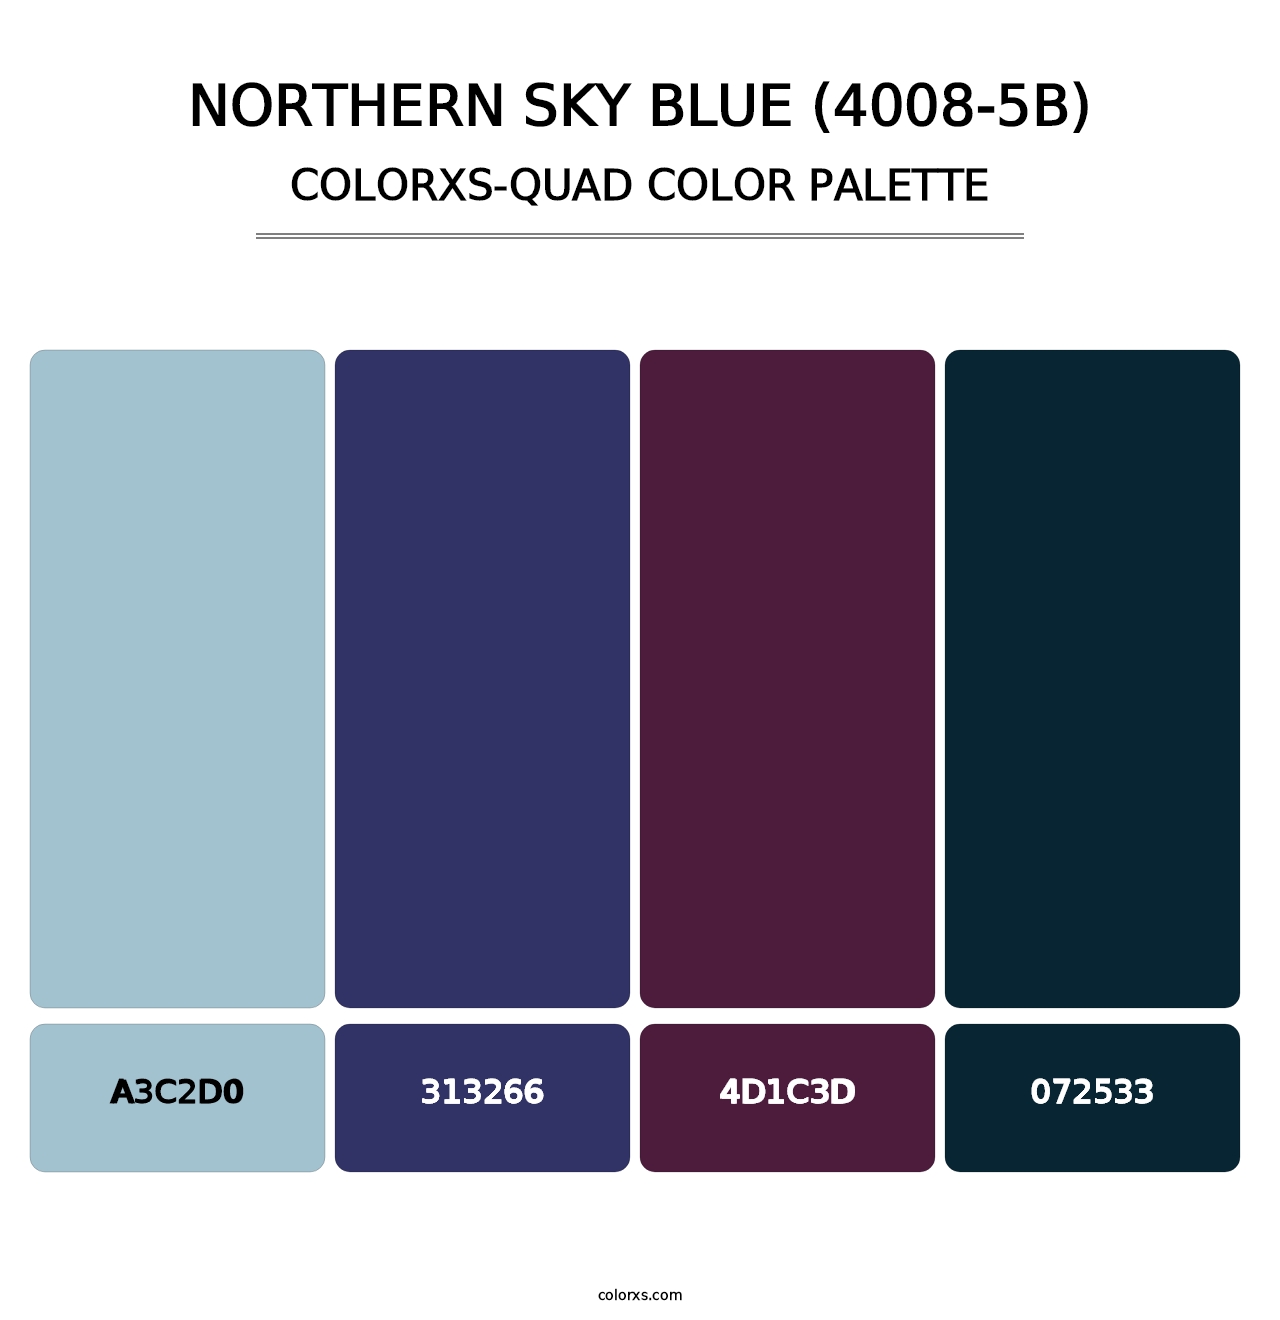 Northern Sky Blue (4008-5B) - Colorxs Quad Palette